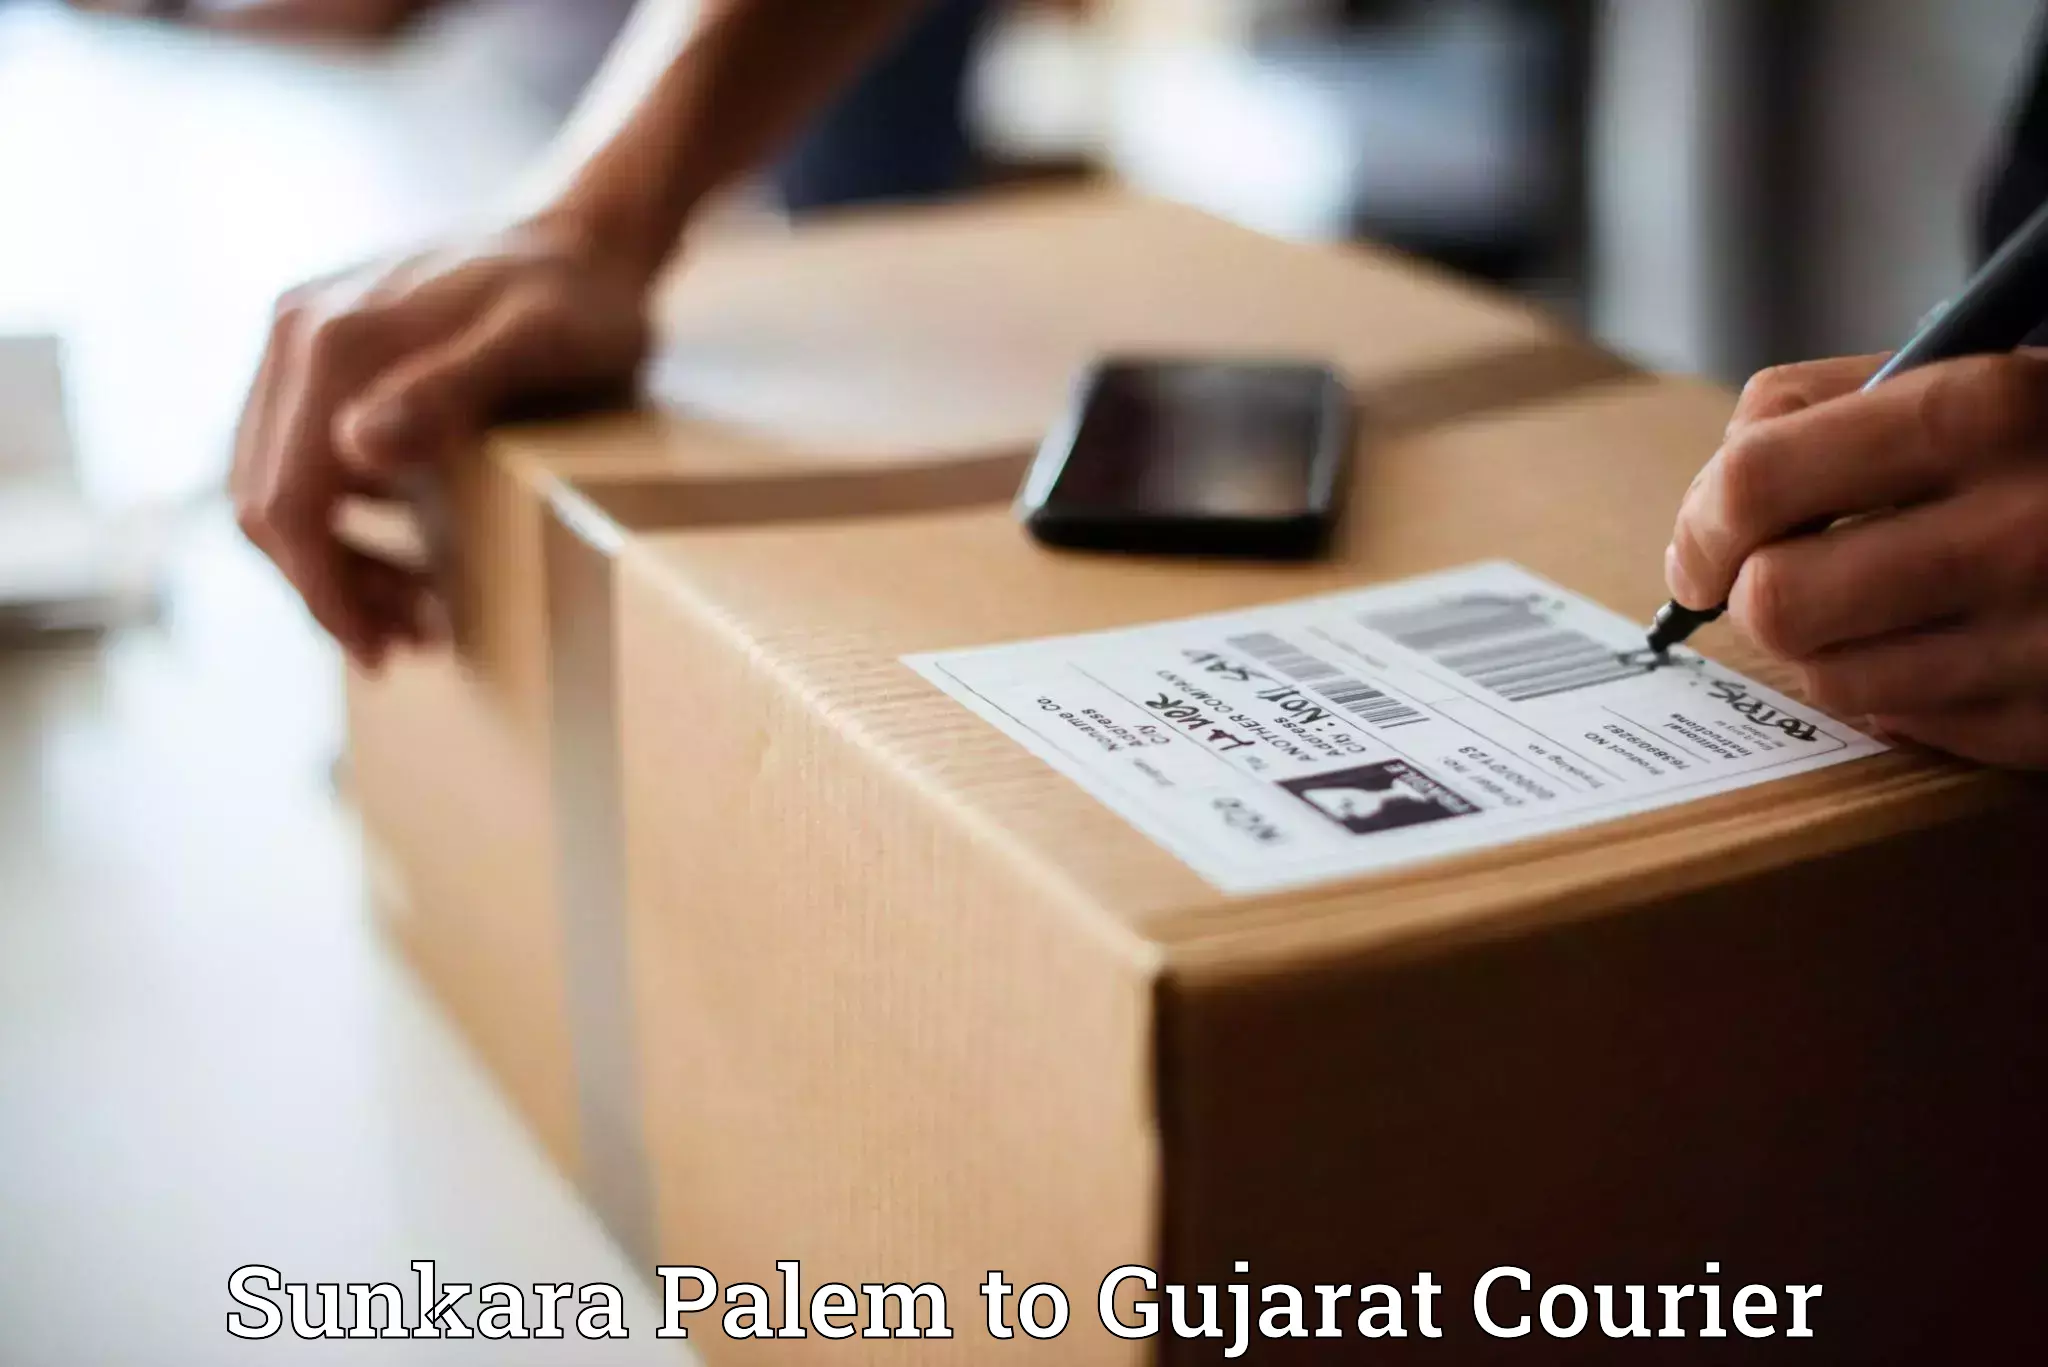 Premium courier services Sunkara Palem to Gujarat